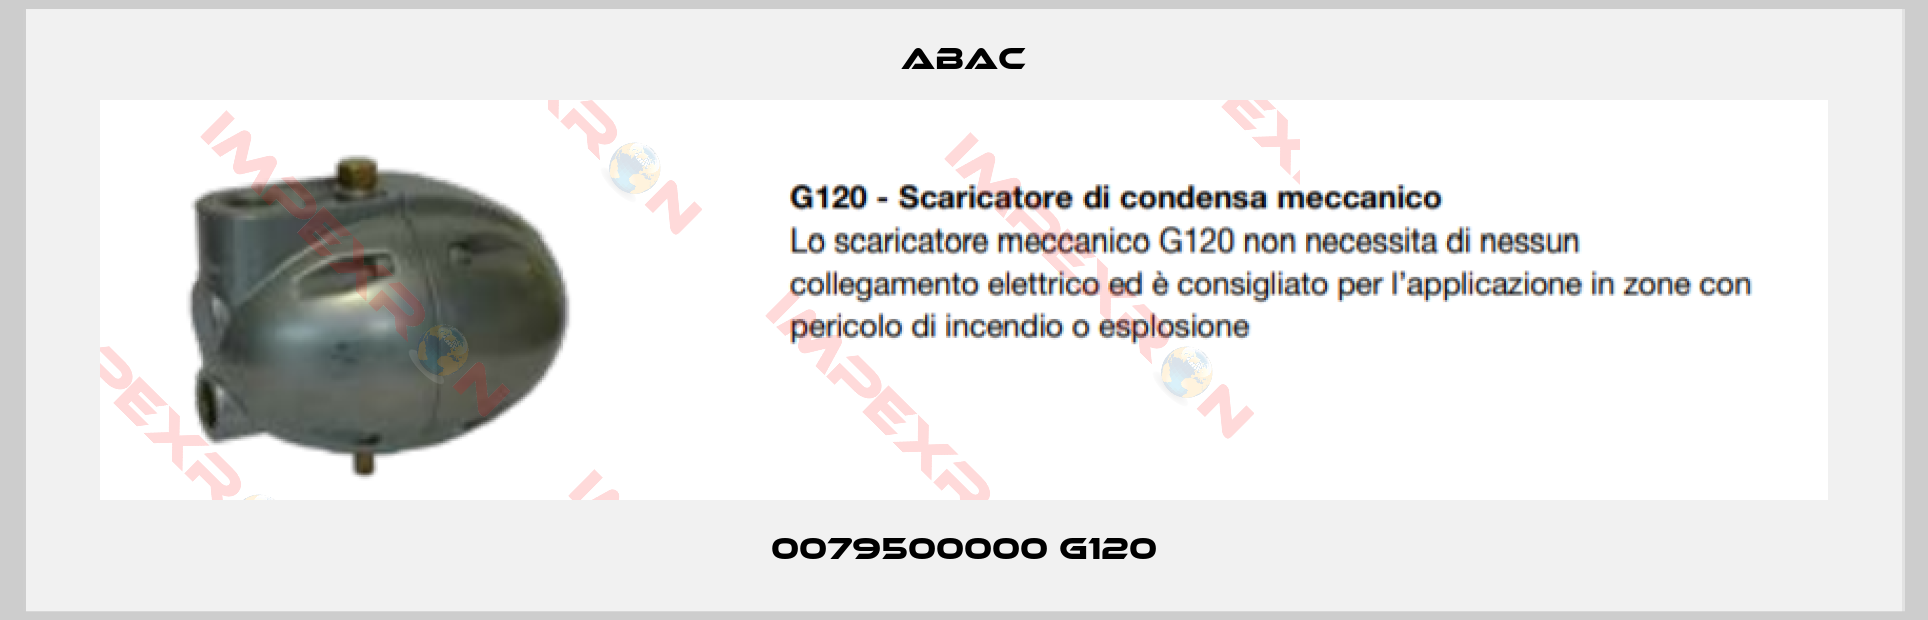 ABAC-0079500000 G120